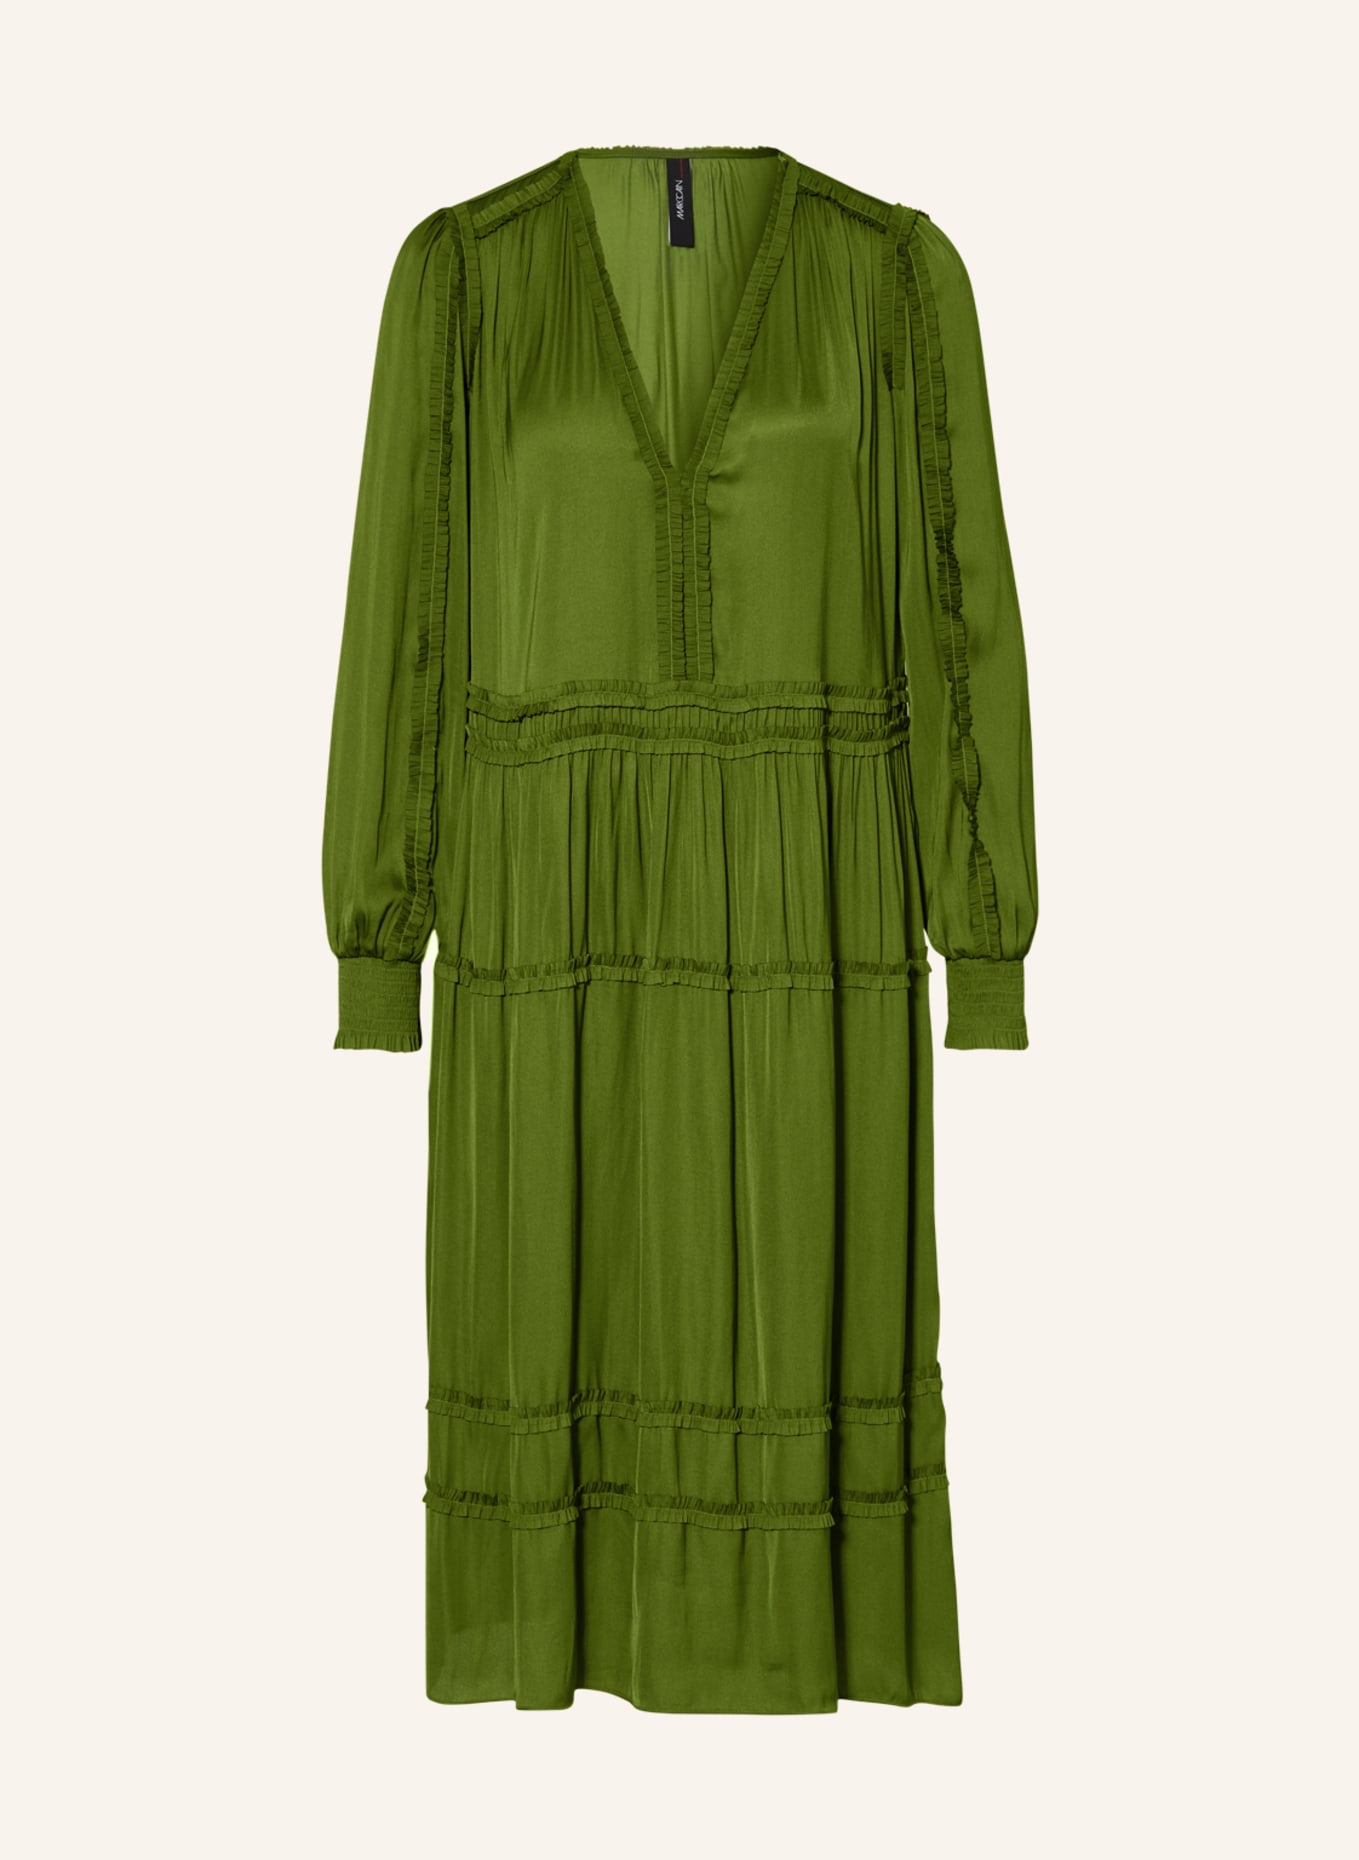 MARC CAIN Kleid mit Rüschen, Farbe: 573 orient green (Bild 1)